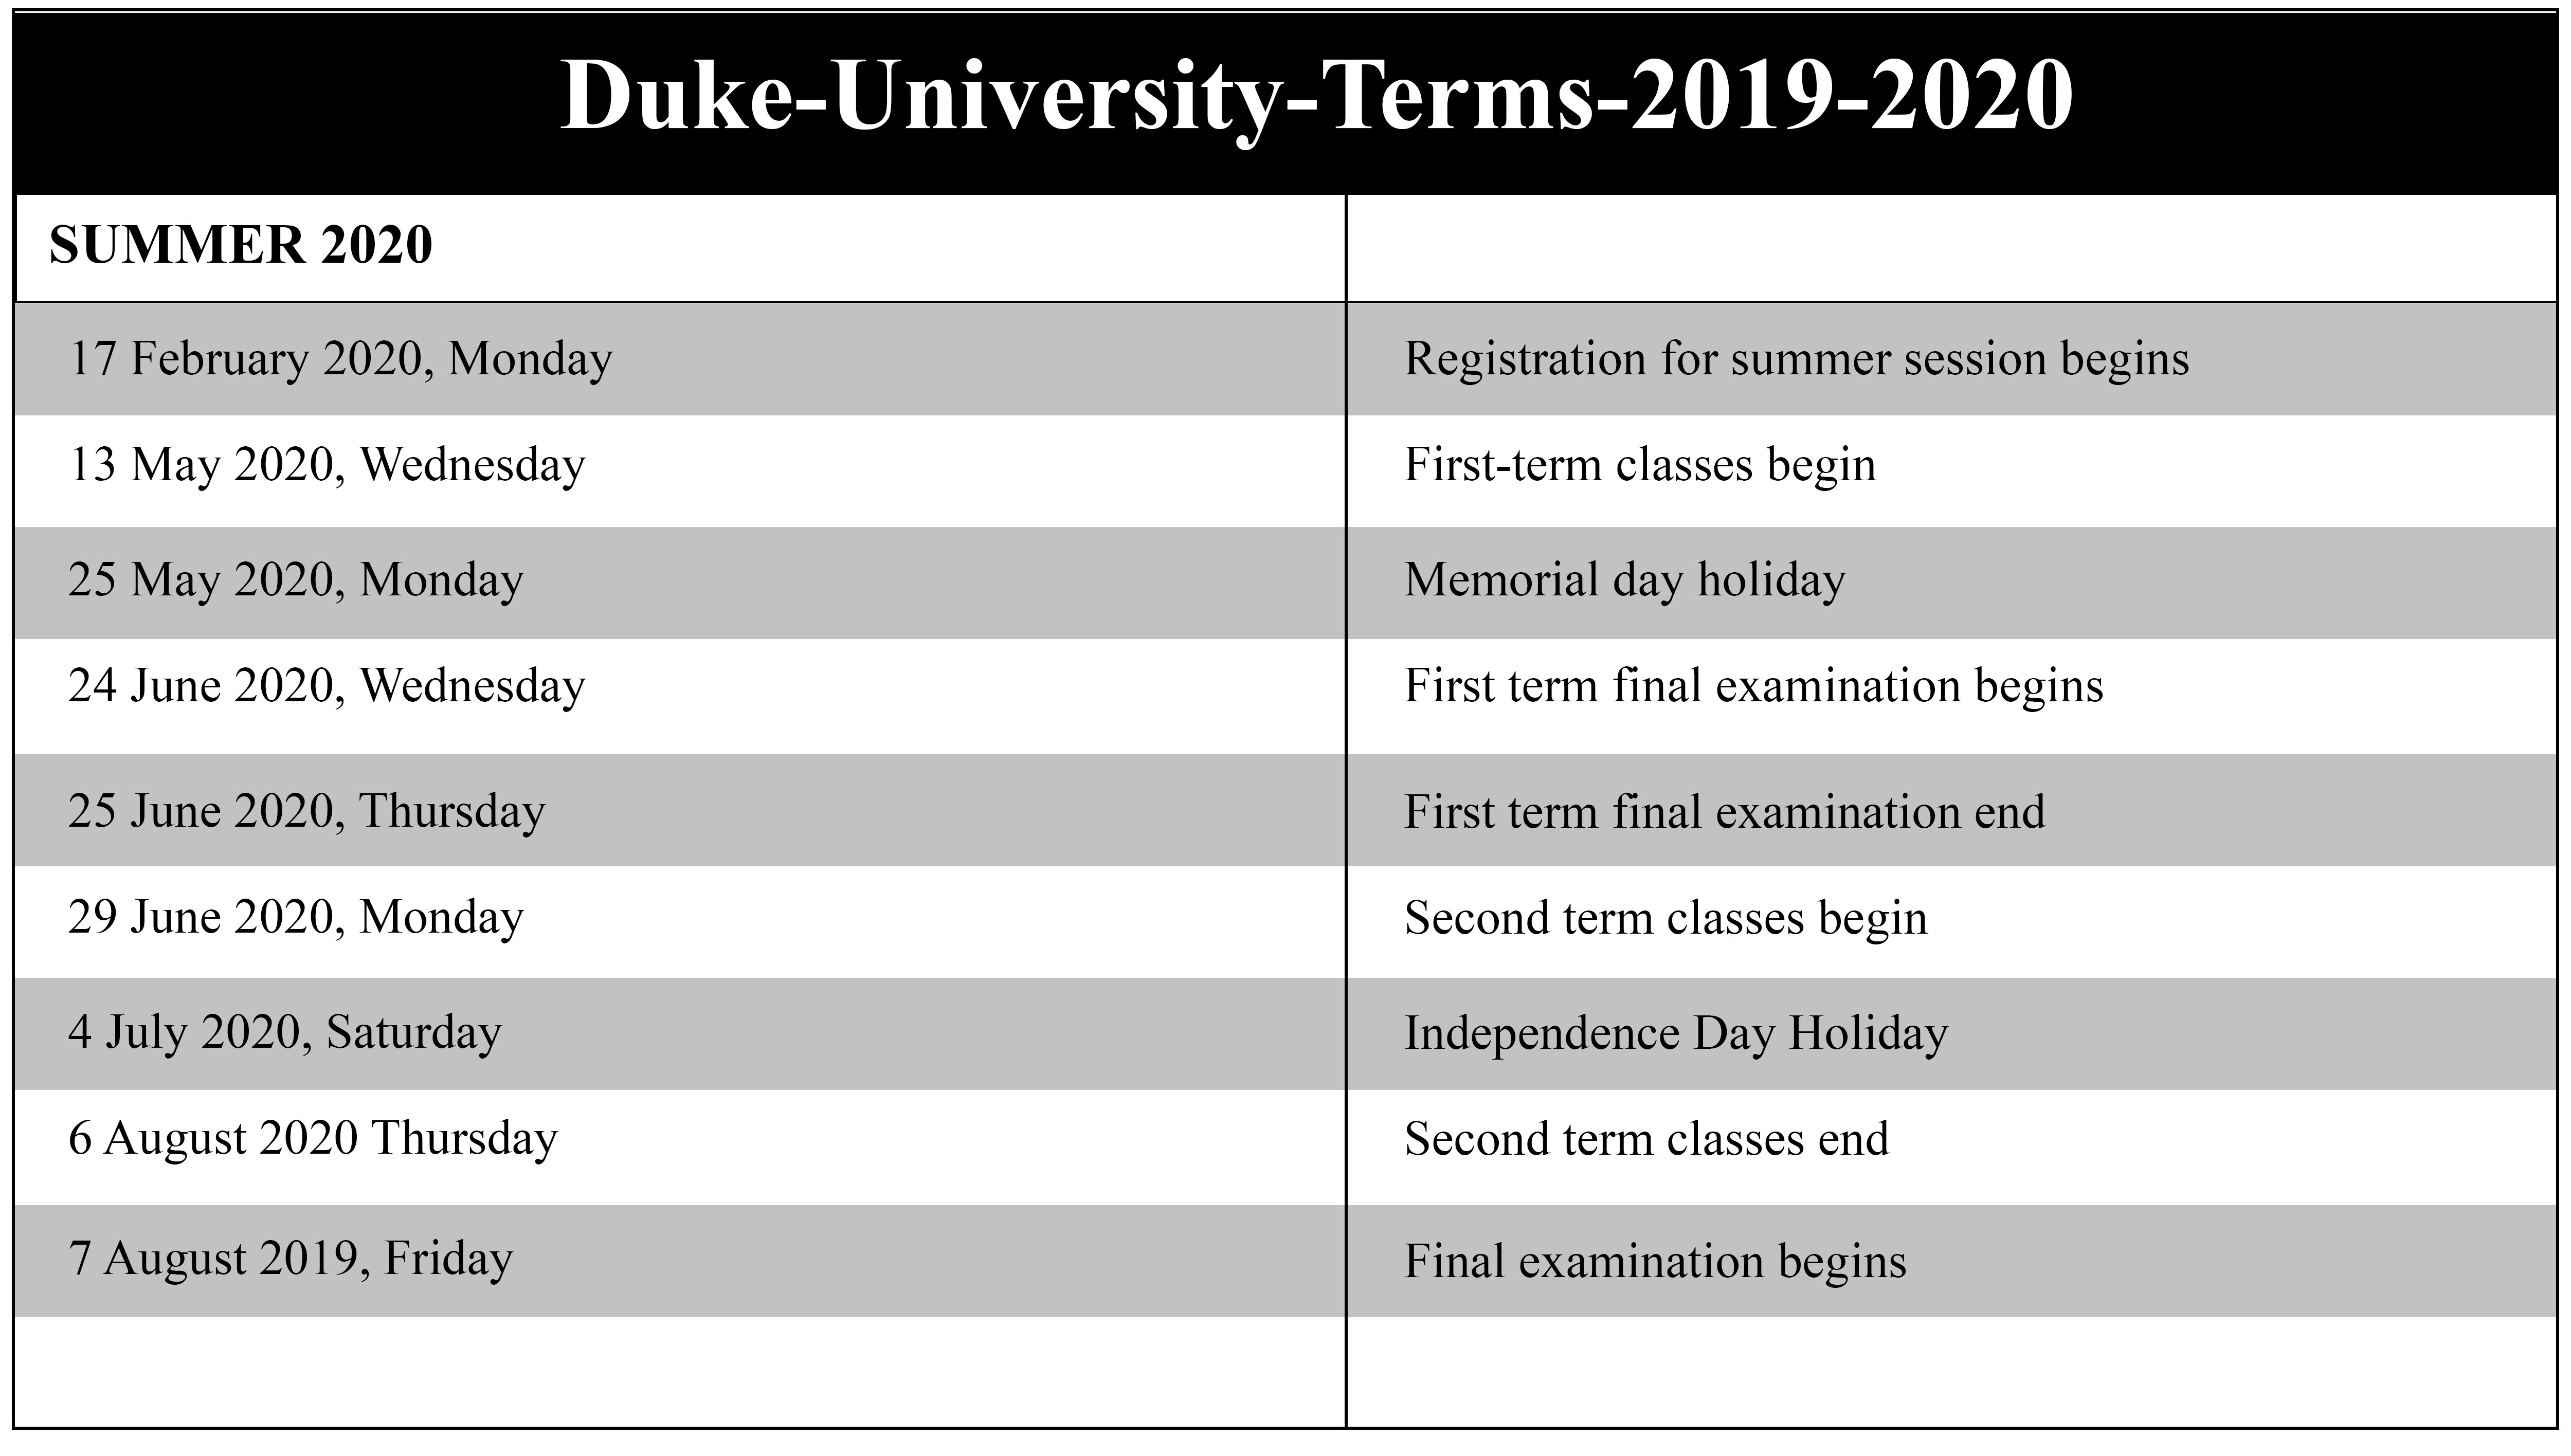 DukeUniversityTerms20192020(summer2020)